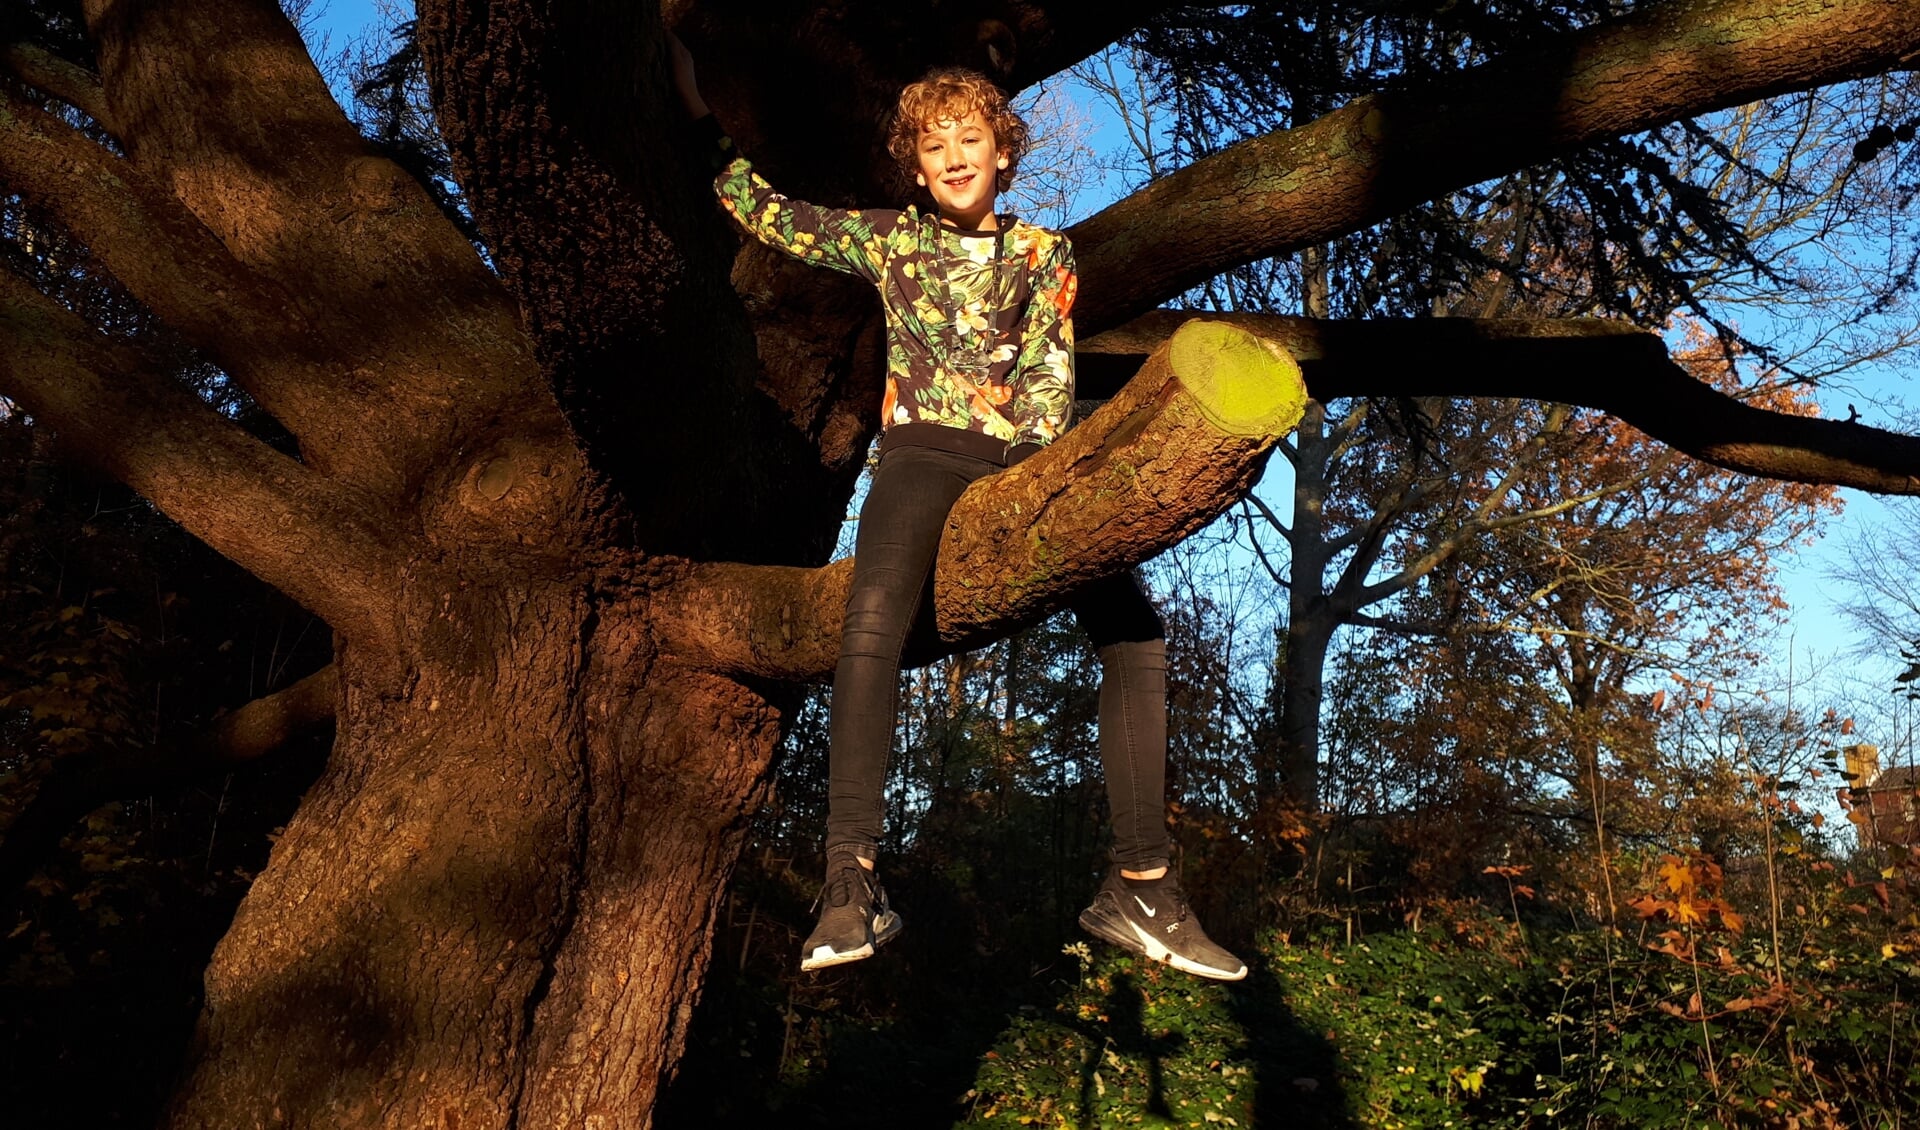 Als hij even geen kinderburgemeesterstaken heeft, klimt Hessel graag in bomen.